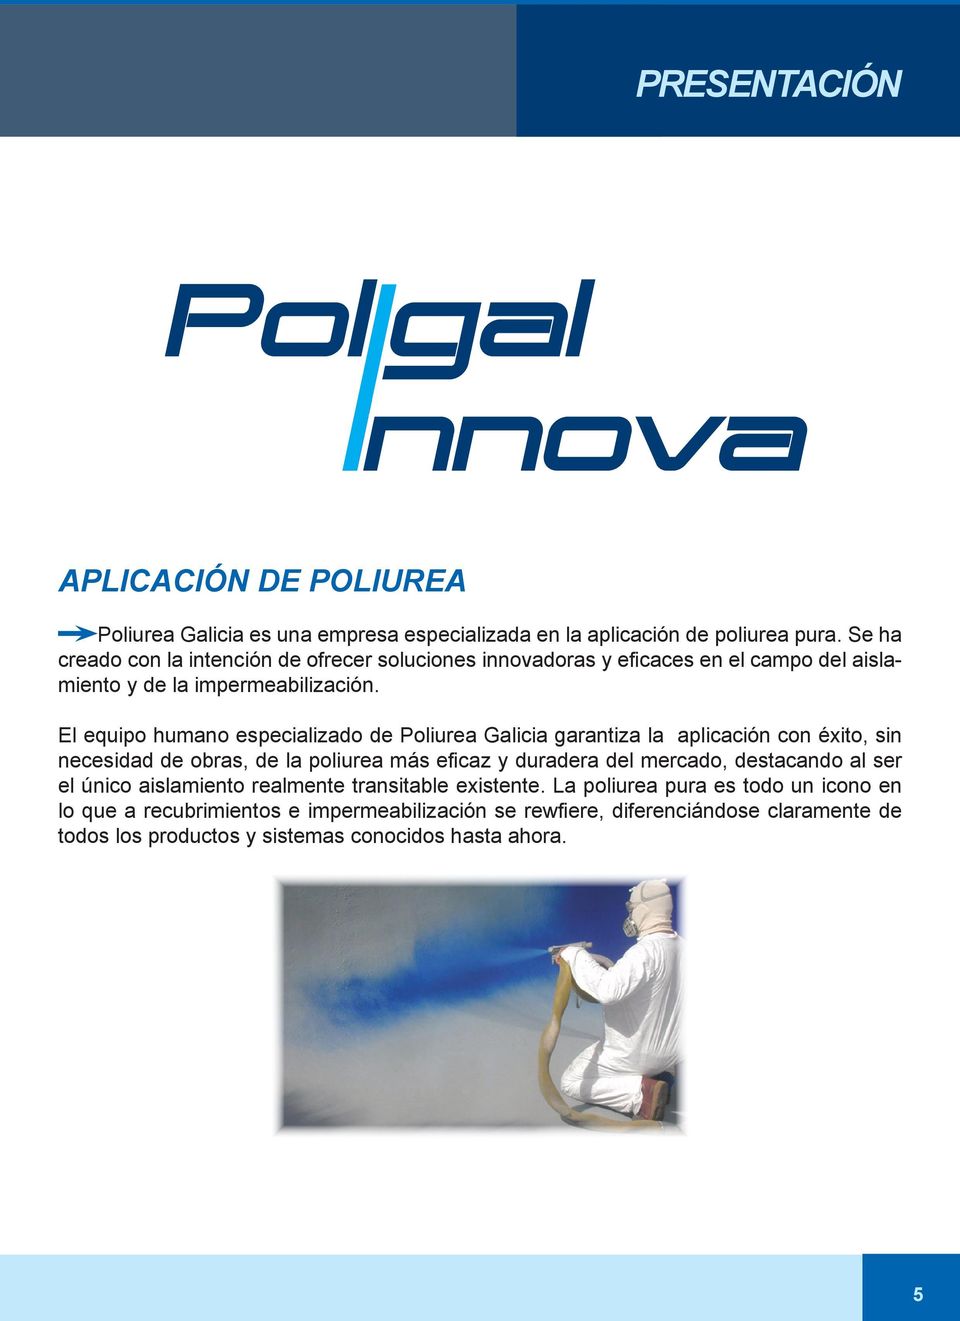 El equipo humano especializado de Poliurea Galicia garantiza la aplicación con éxito, sin necesidad de obras, de la poliurea más eficaz y duradera del mercado,